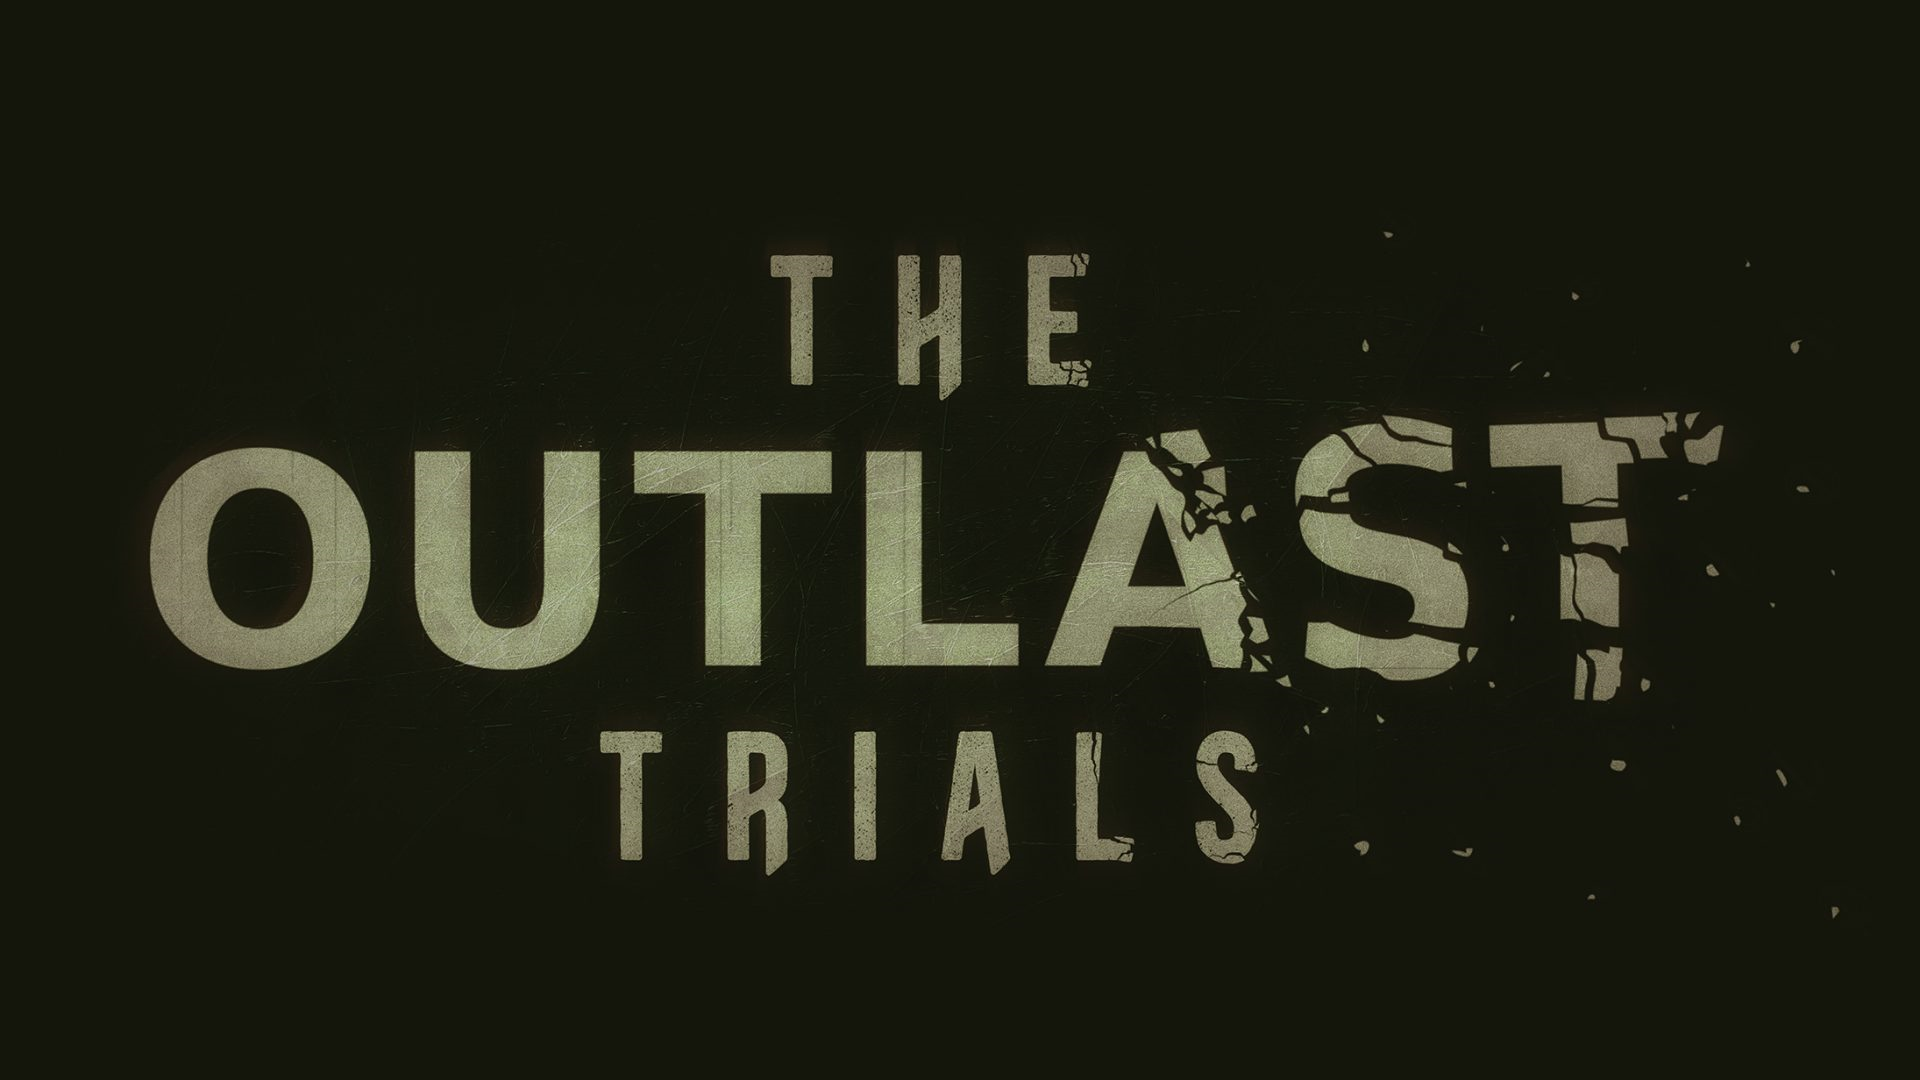 The Outlast Trials: Novo título da série de terror será lançado